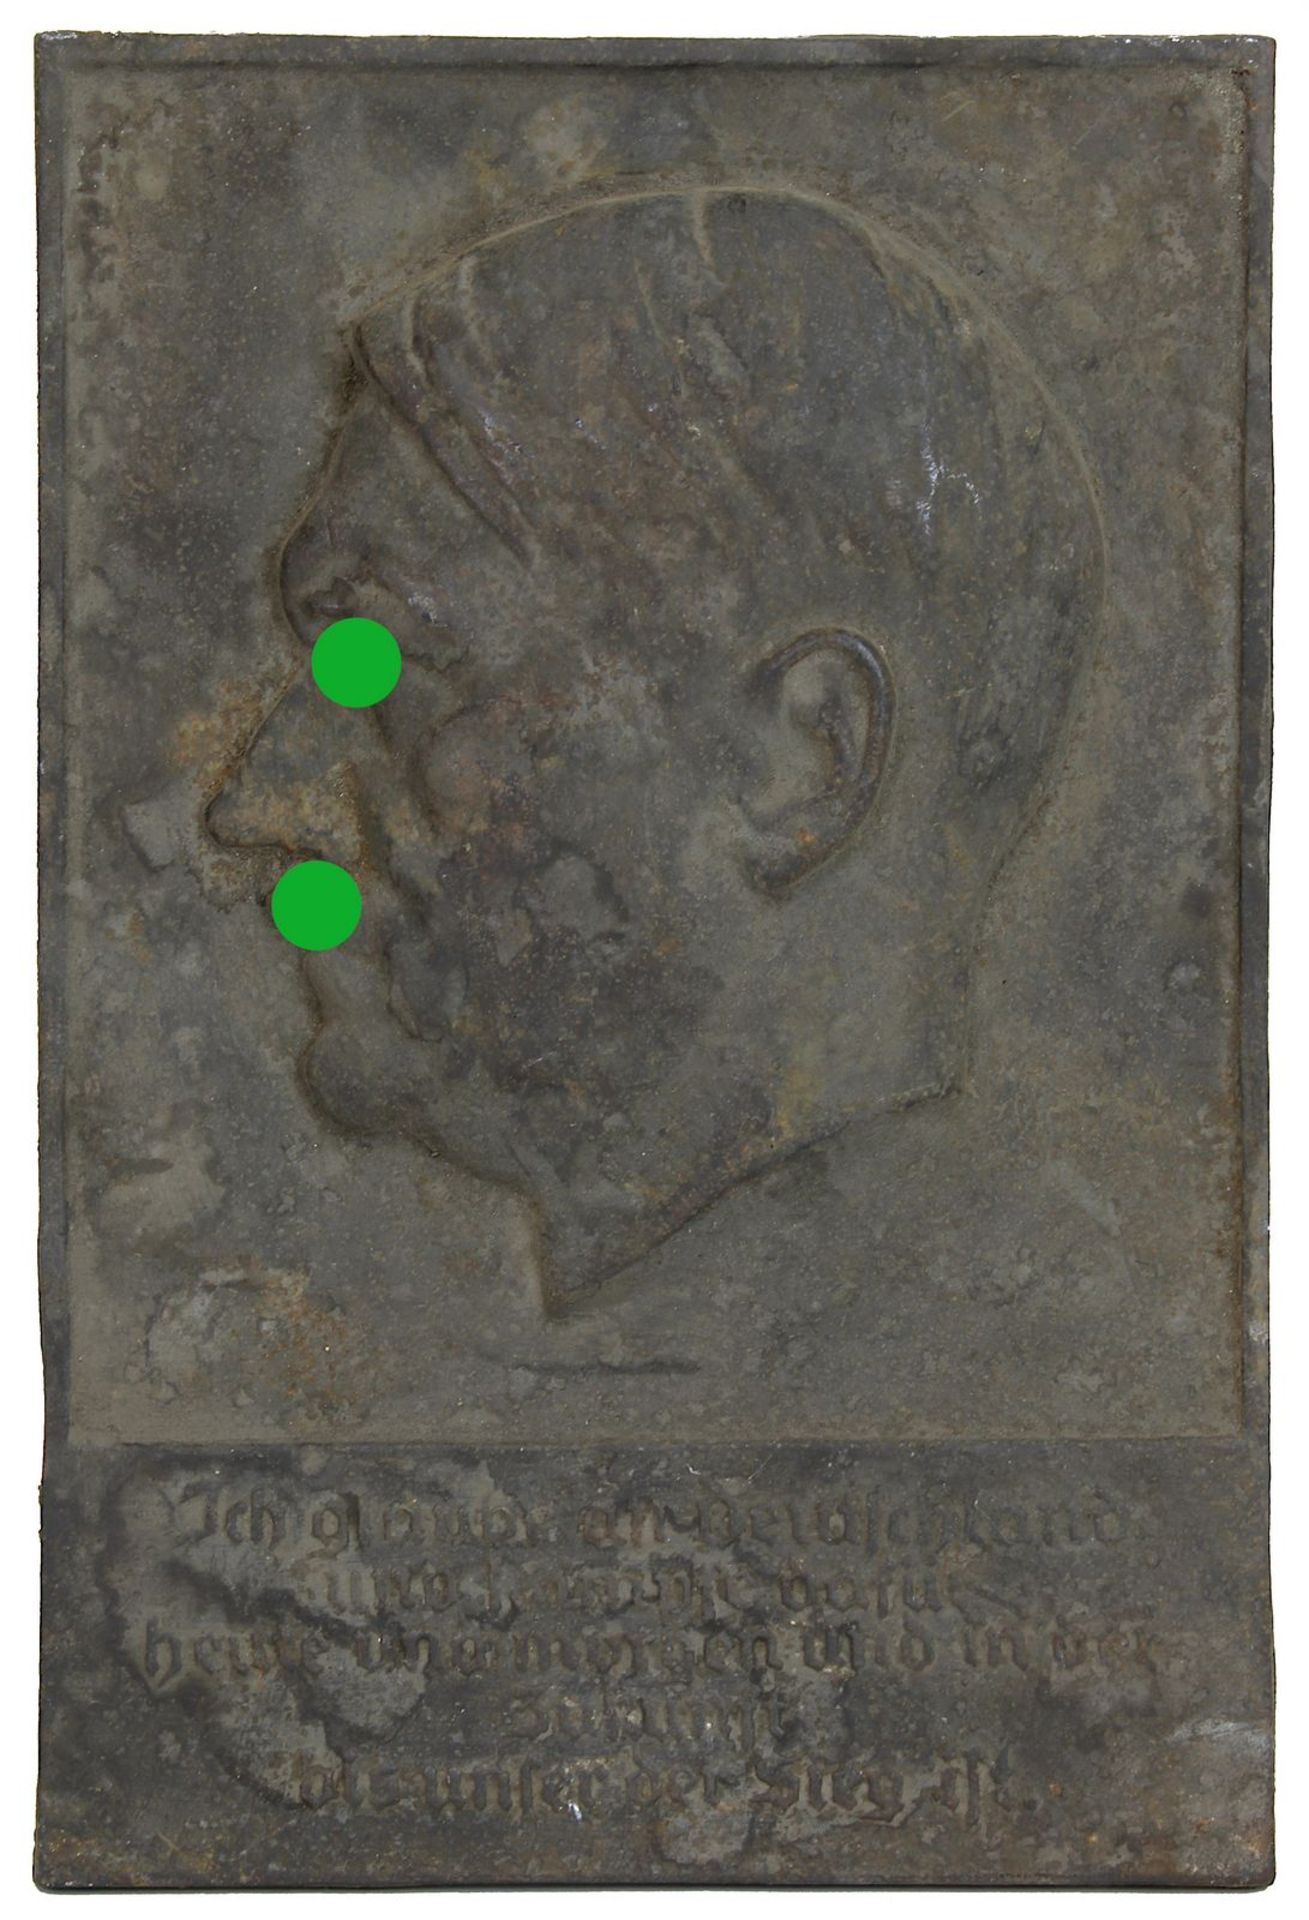 Wandtafel, Deutsches Reich 1933 - 1945, Eisenguss, Porträt Adolf Hitler im Profil nach links,